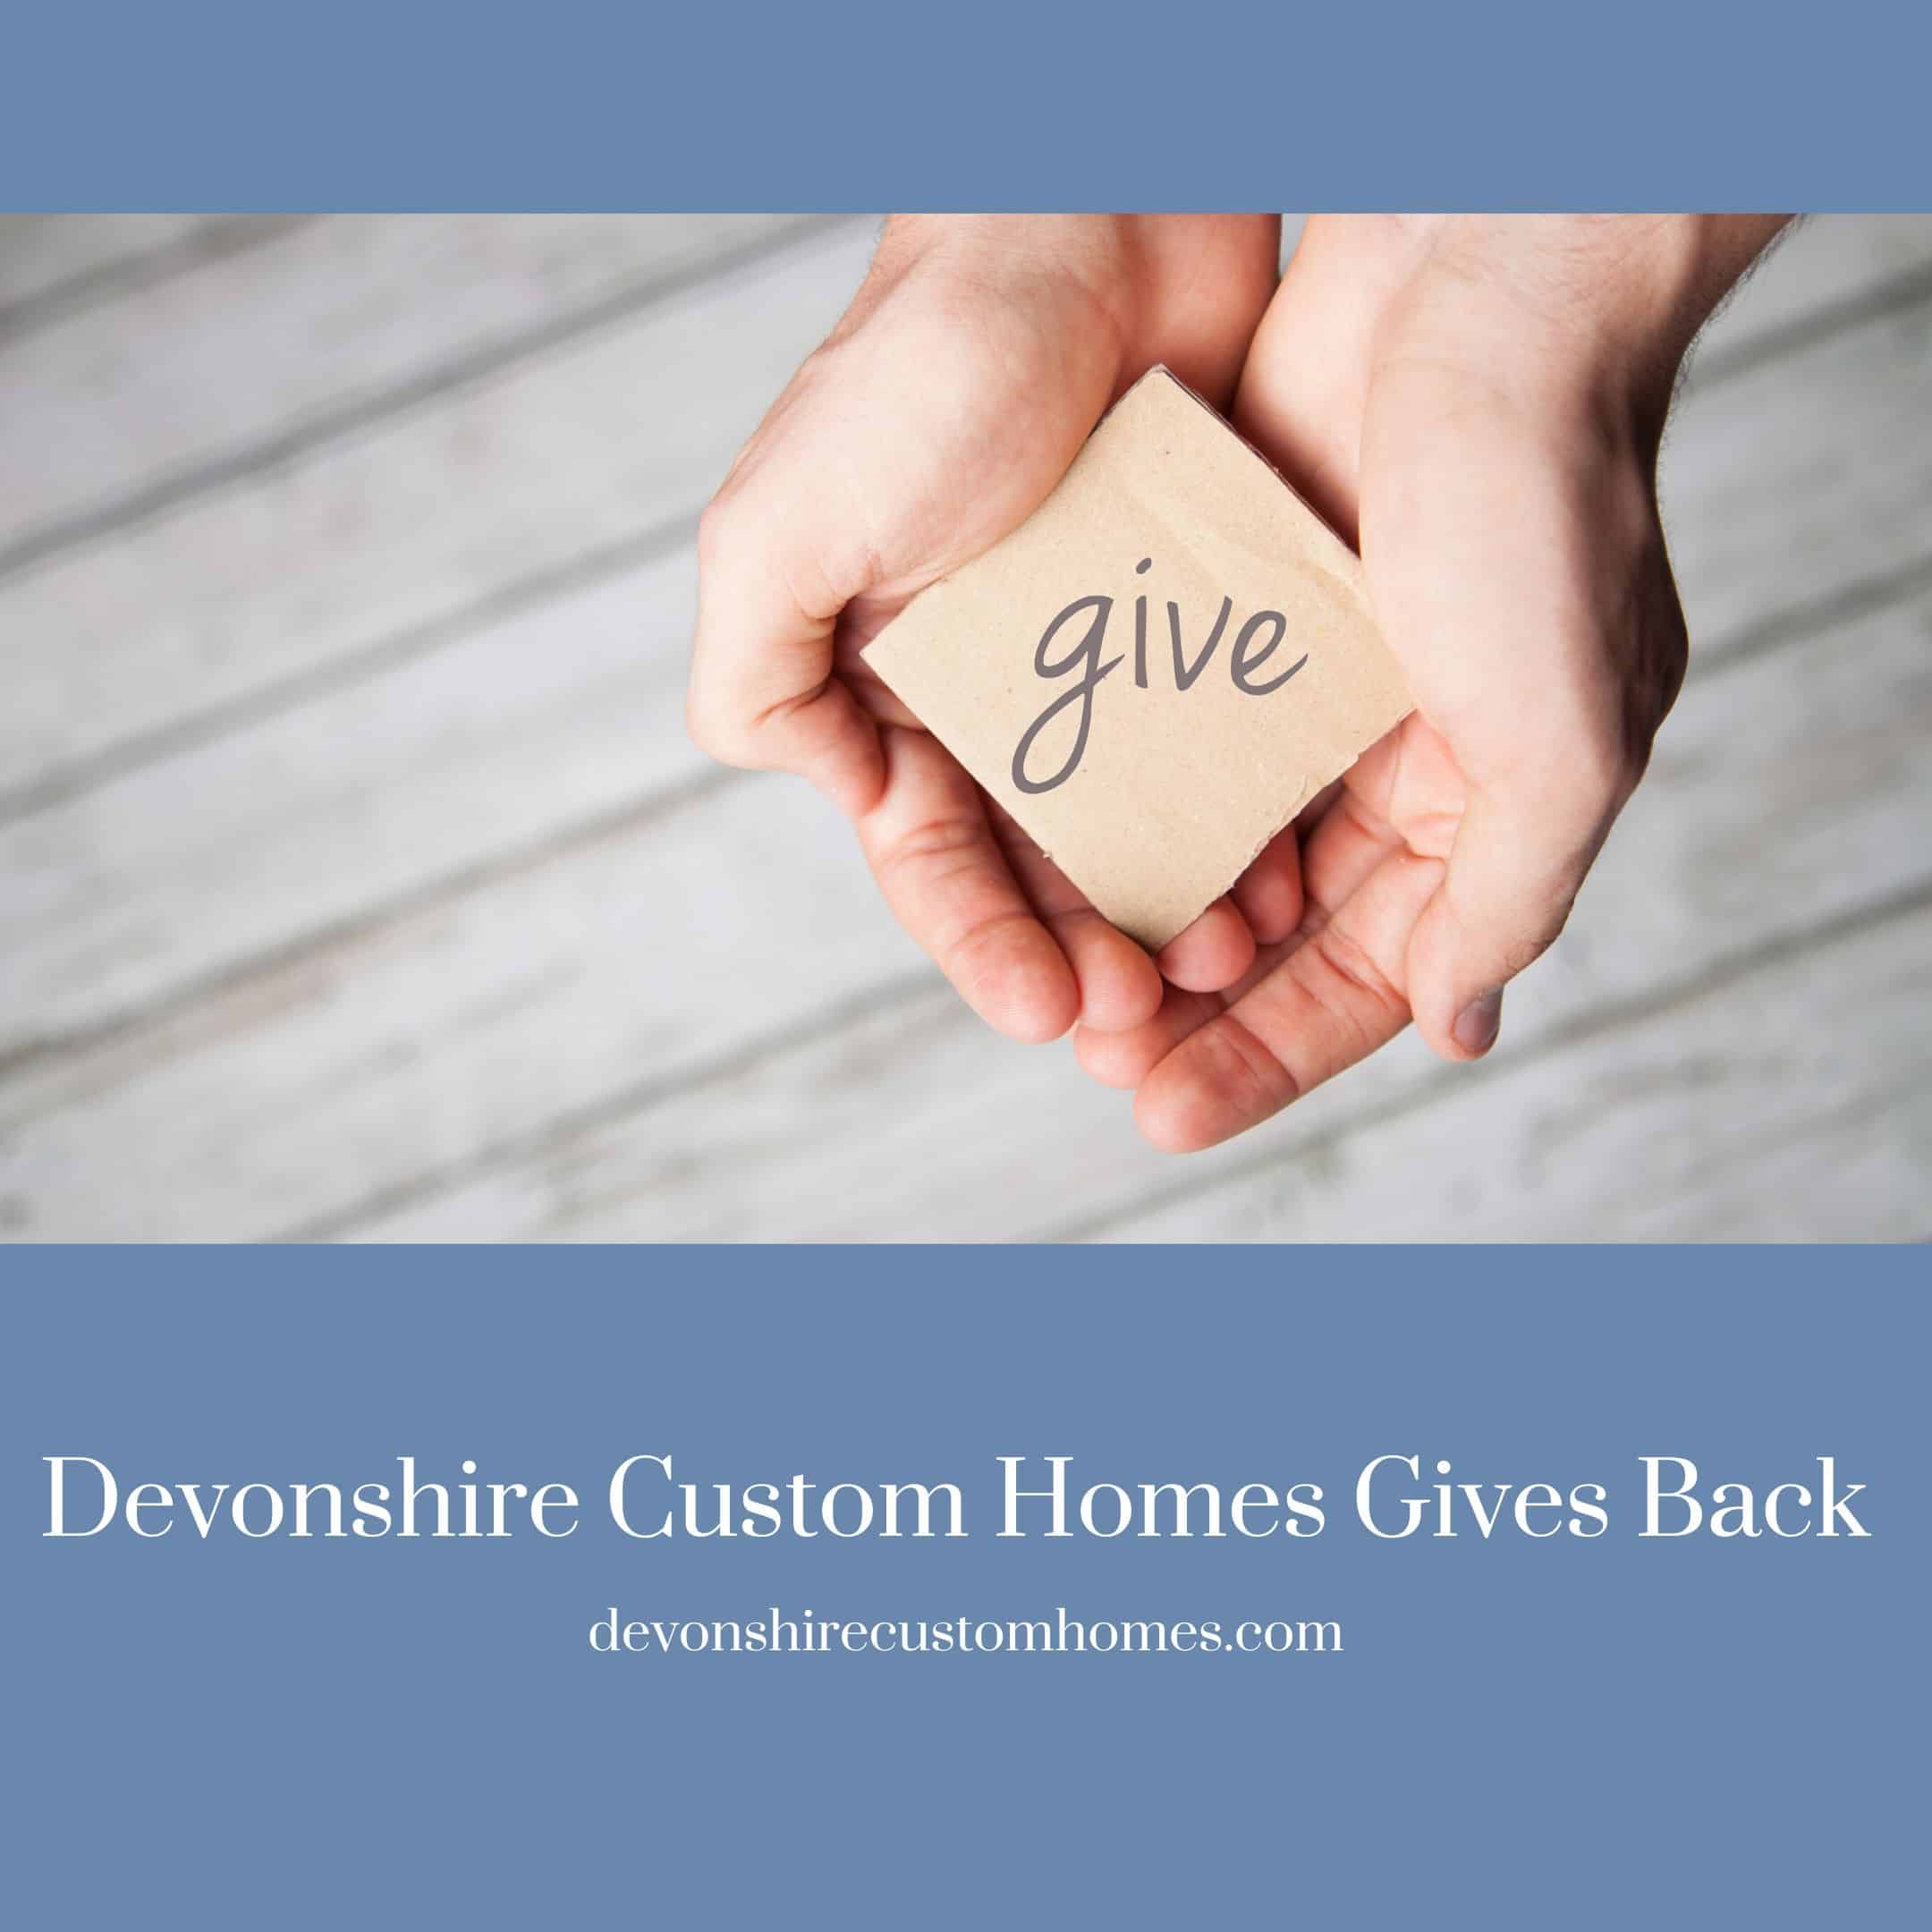 Devonshire Custom Homes Gives Back